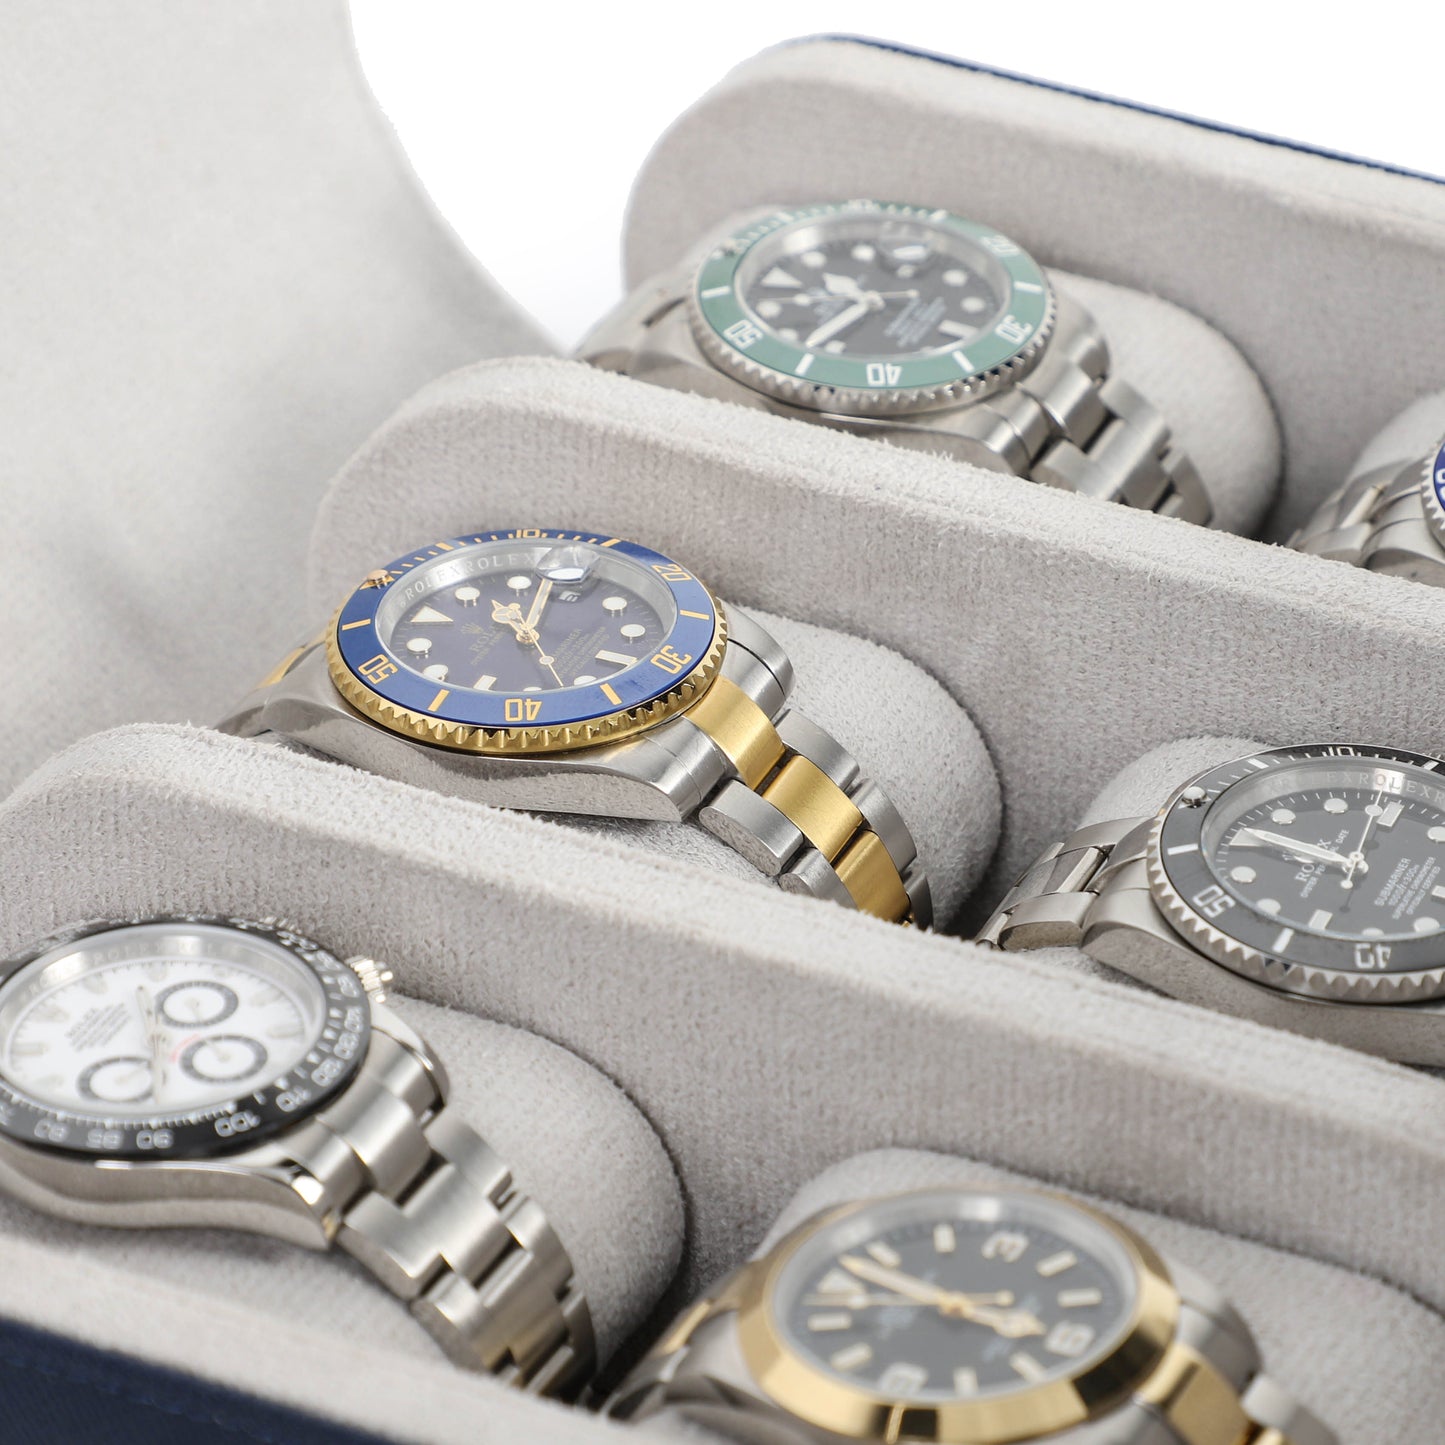 Timezone - Leren Watch roll voor 6 Horloges - Horloge Reisetui - Blauw